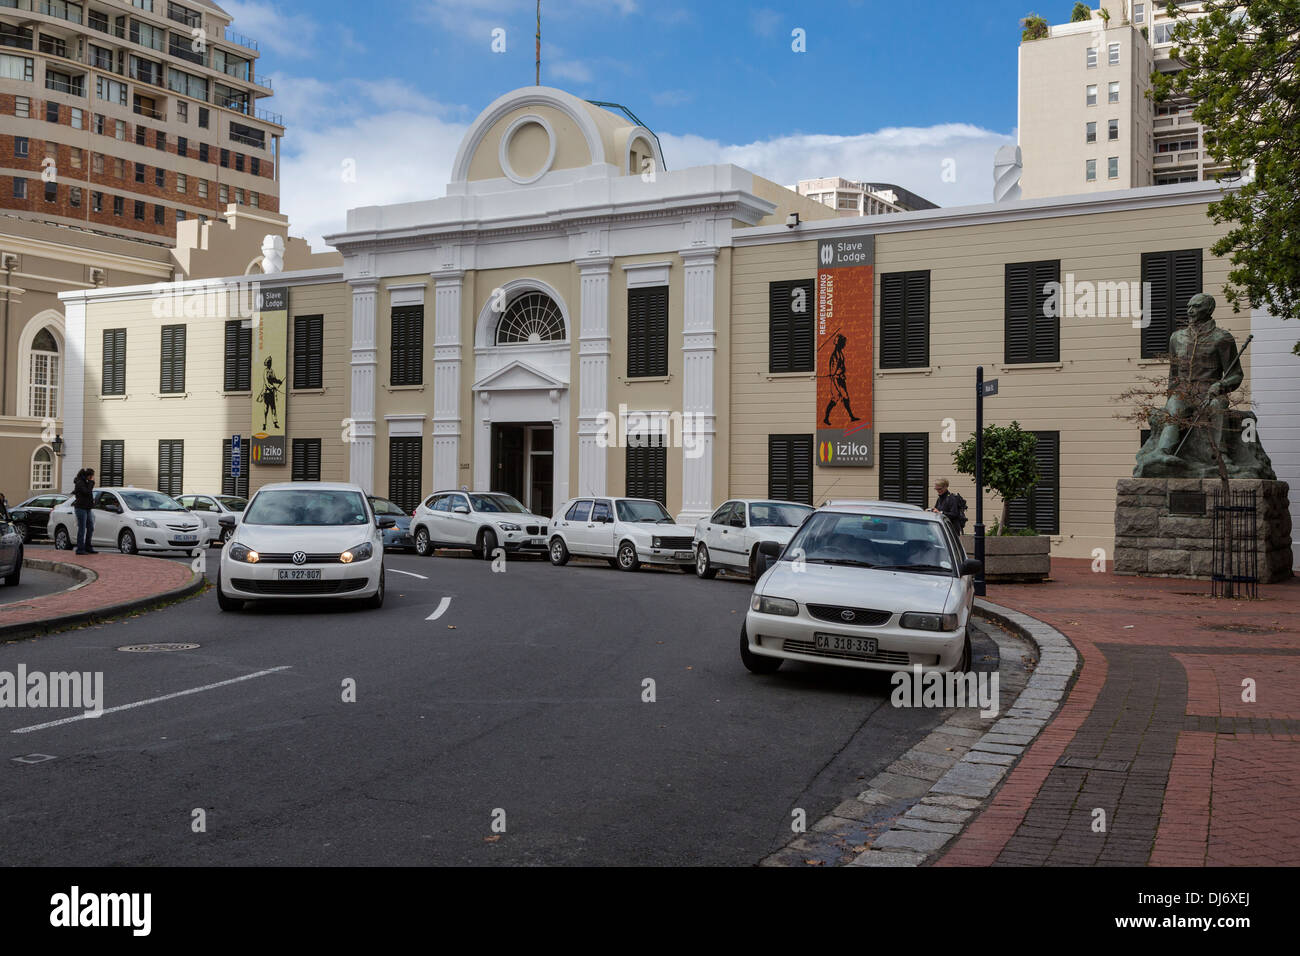 L'Afrique du Sud, Cape Town. Iziko Slave Lodge, ancien immeuble de bureaux du gouvernement, vieille cour suprême. Statue de Jan Smuts, droite. Banque D'Images